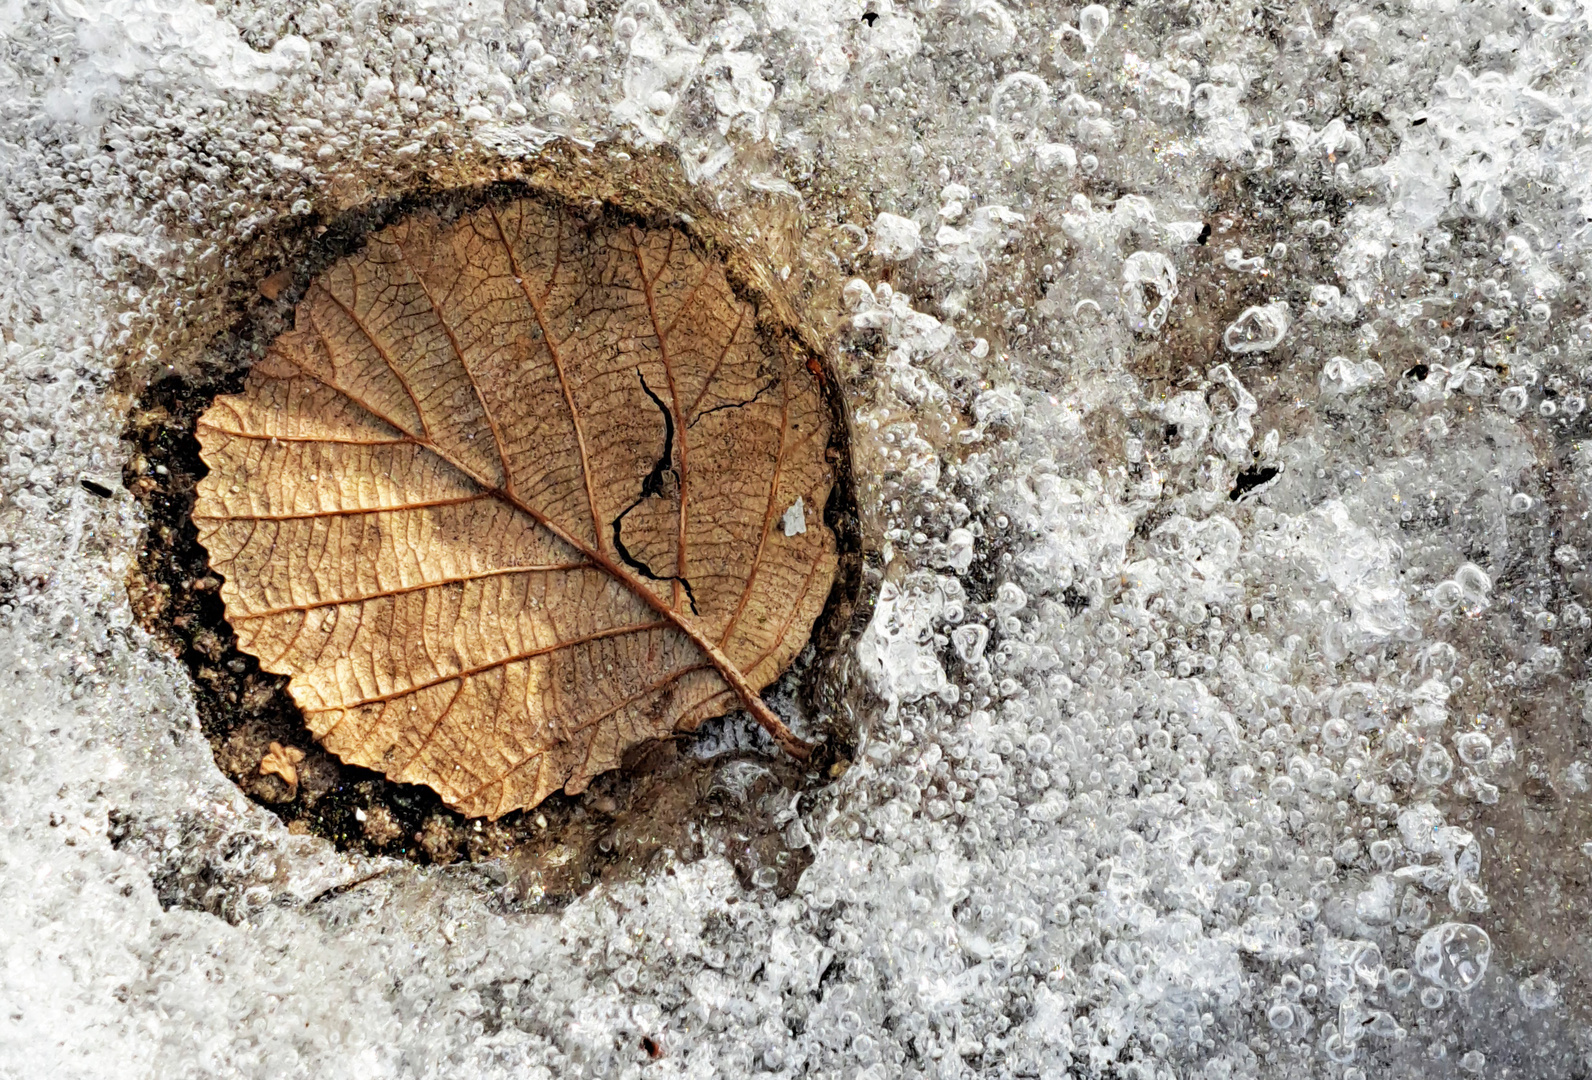 The leaf on ice